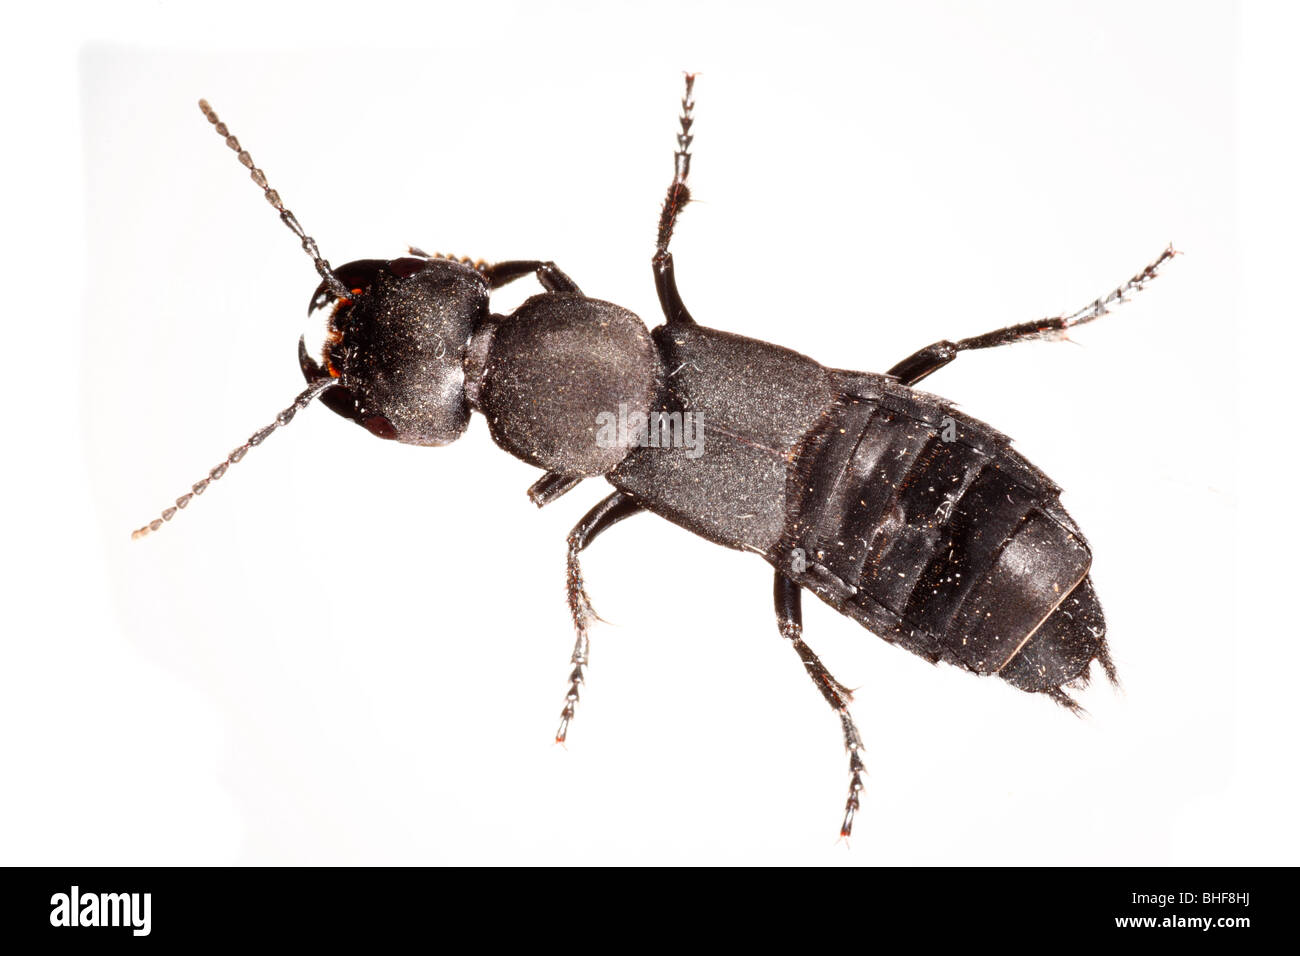 Des Teufels Coach Horse Käfer (Staphylinus Olens). Leben Sie Insekt vor einem weißen Hintergrund auf ein tragbares Studio fotografiert. Stockfoto